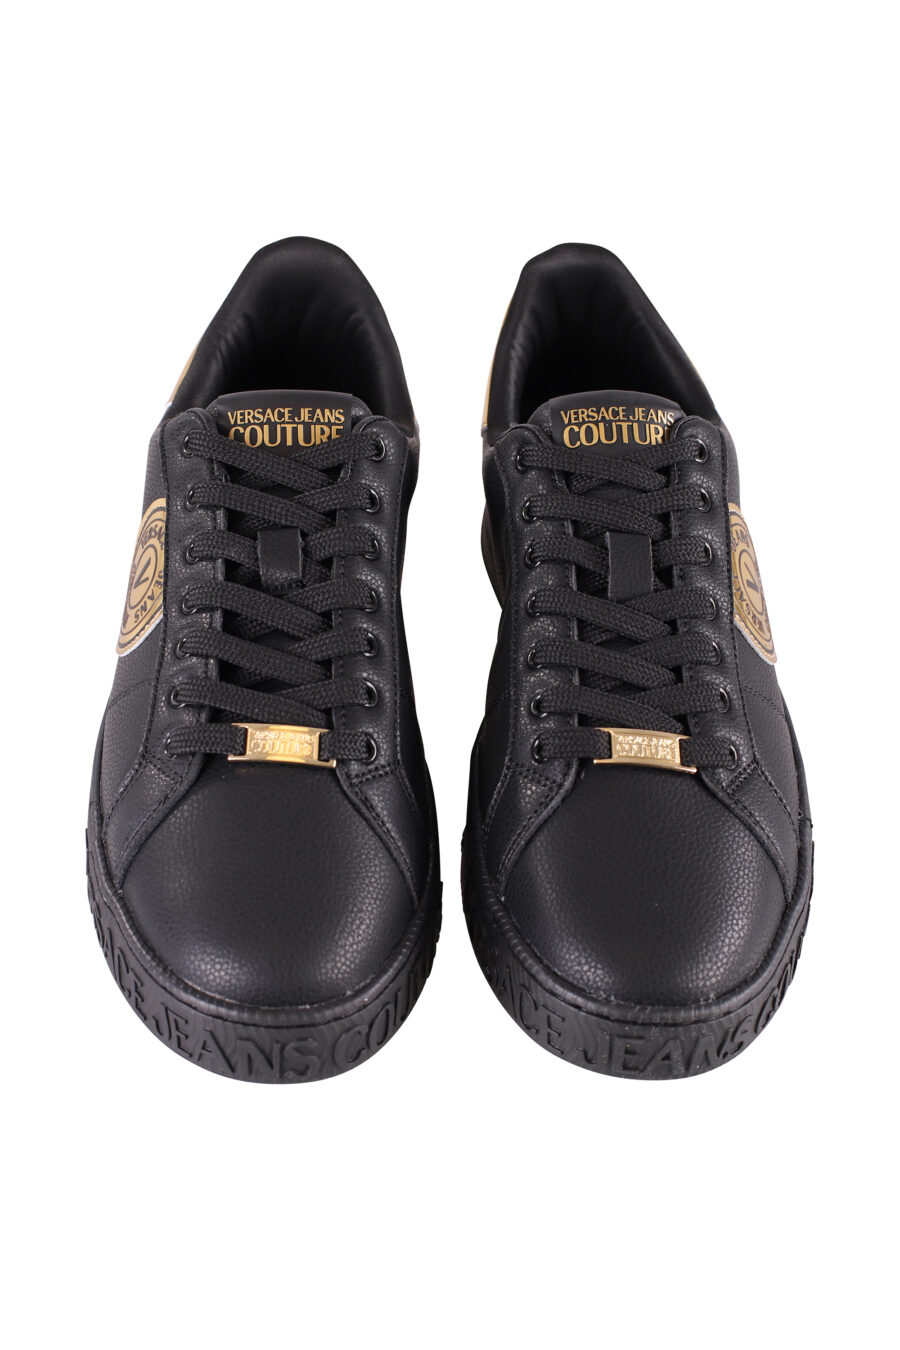 Zapatillas negras y doradas con logo semicirculo - IMG 8499